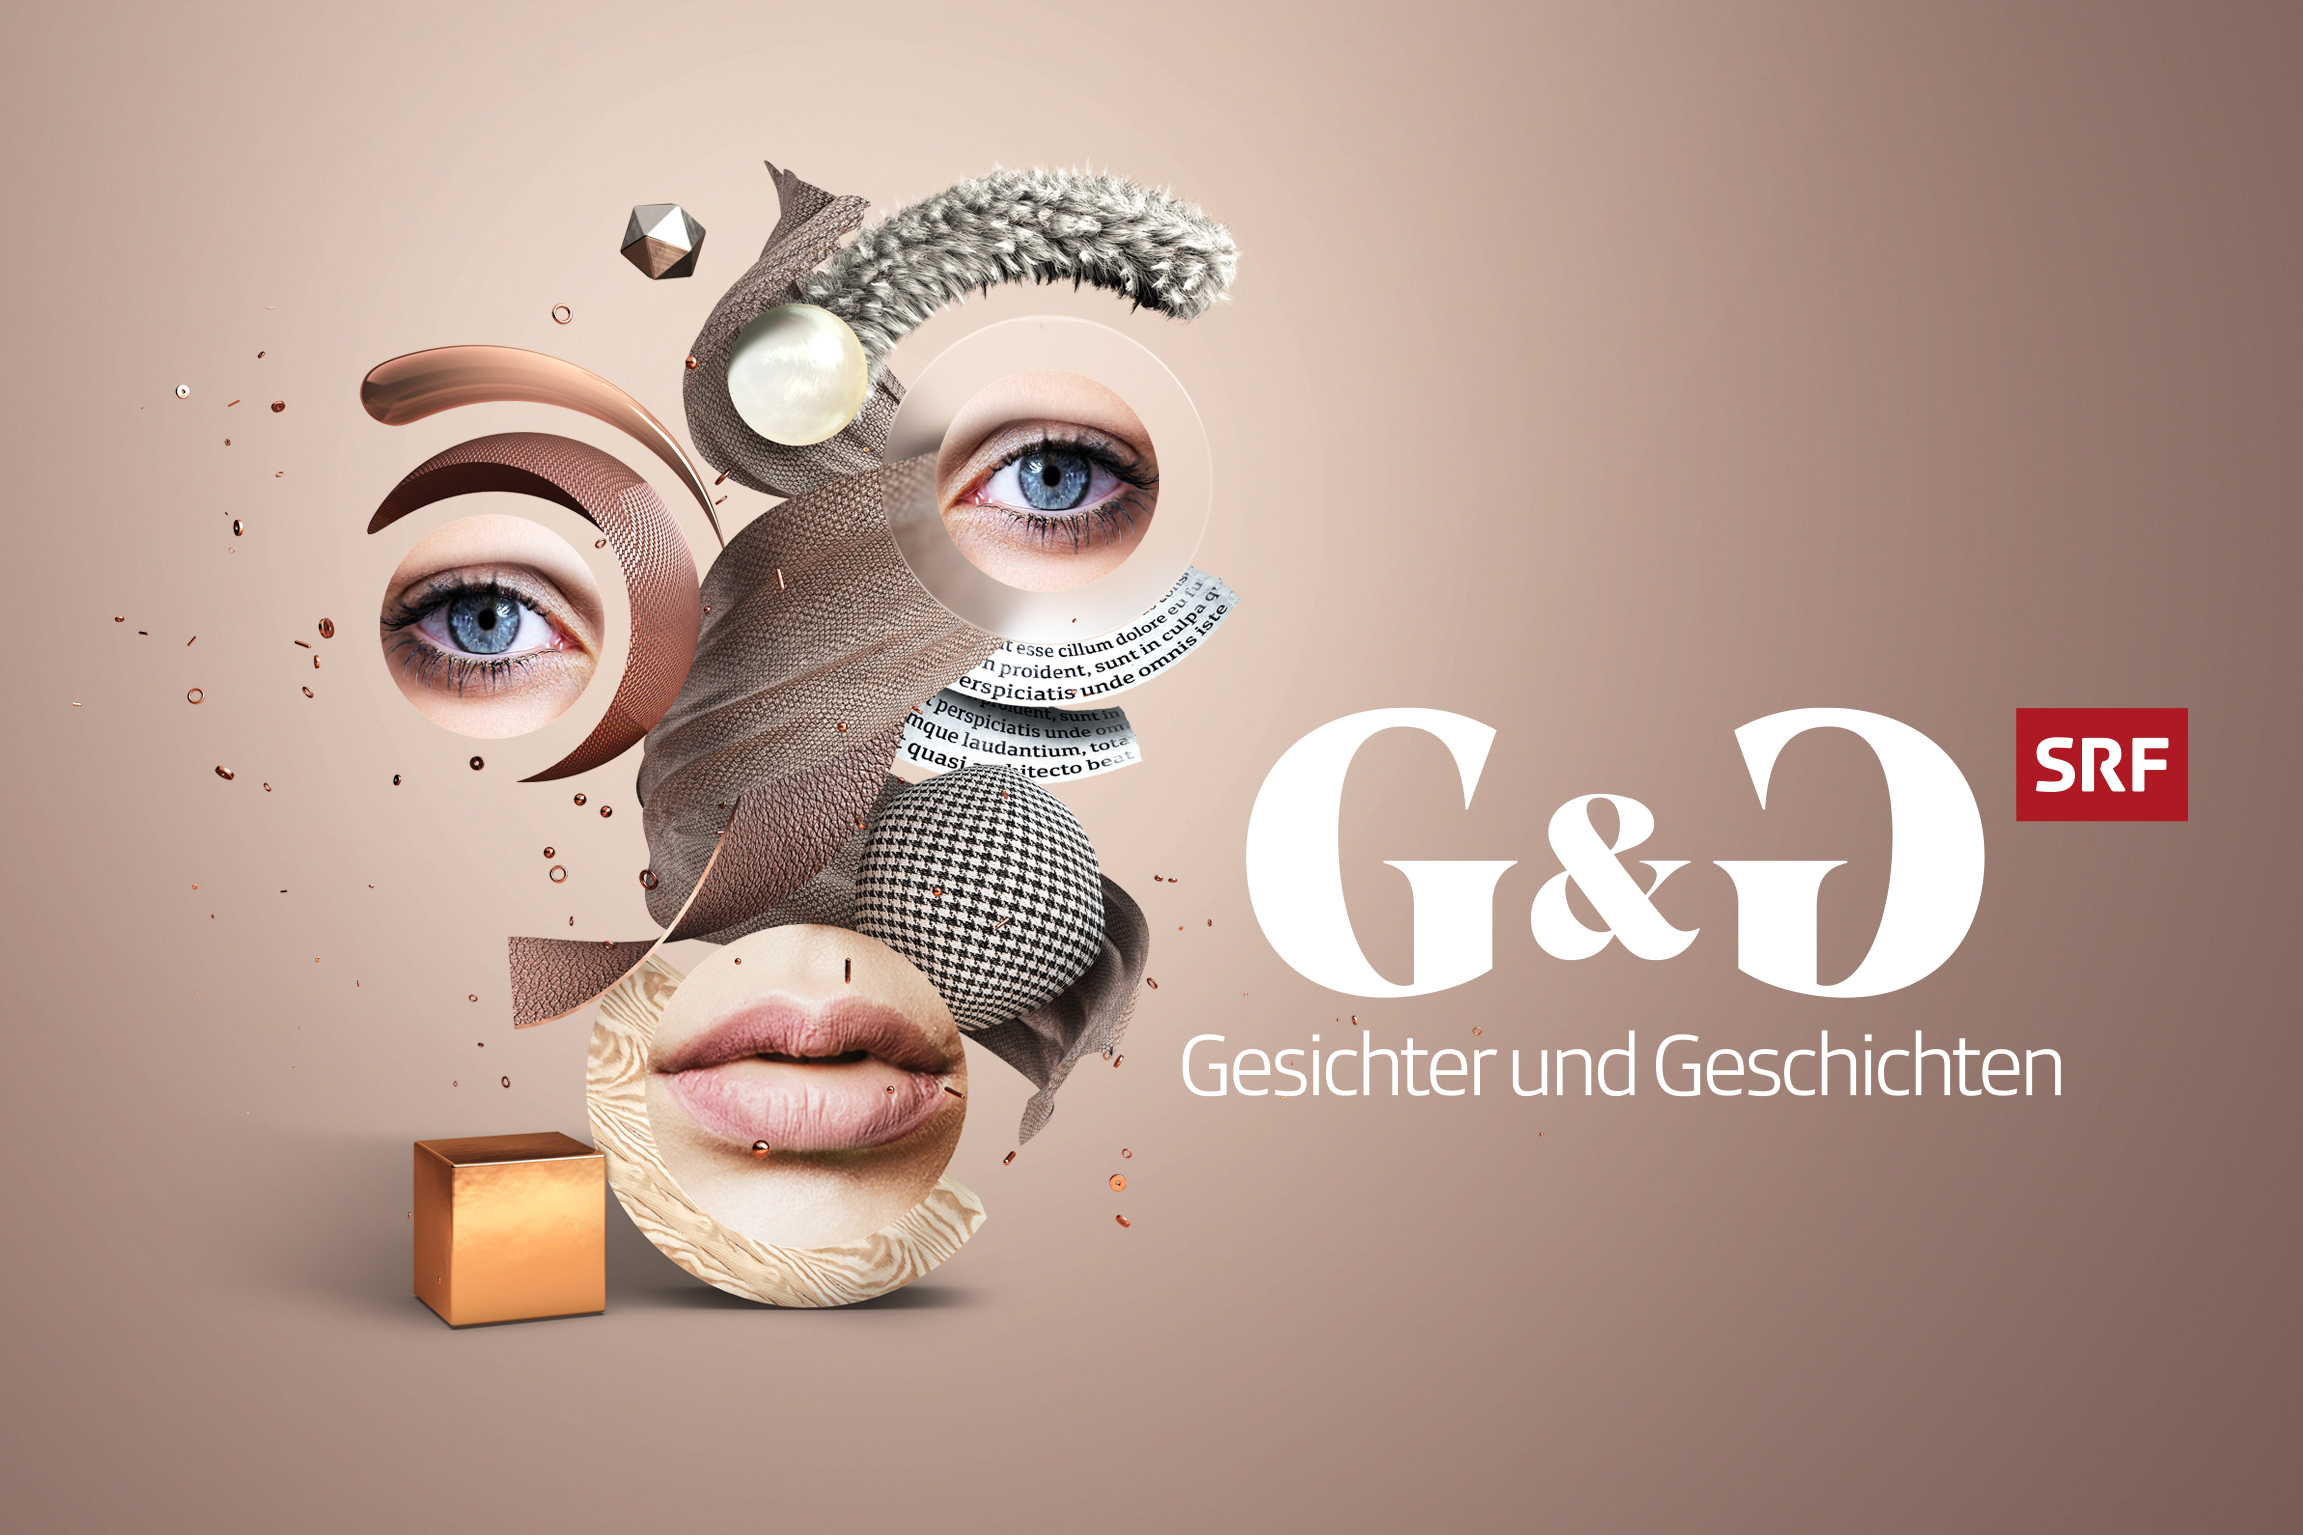 G&G – Gesichter und Geschichten Keyvisual 2020